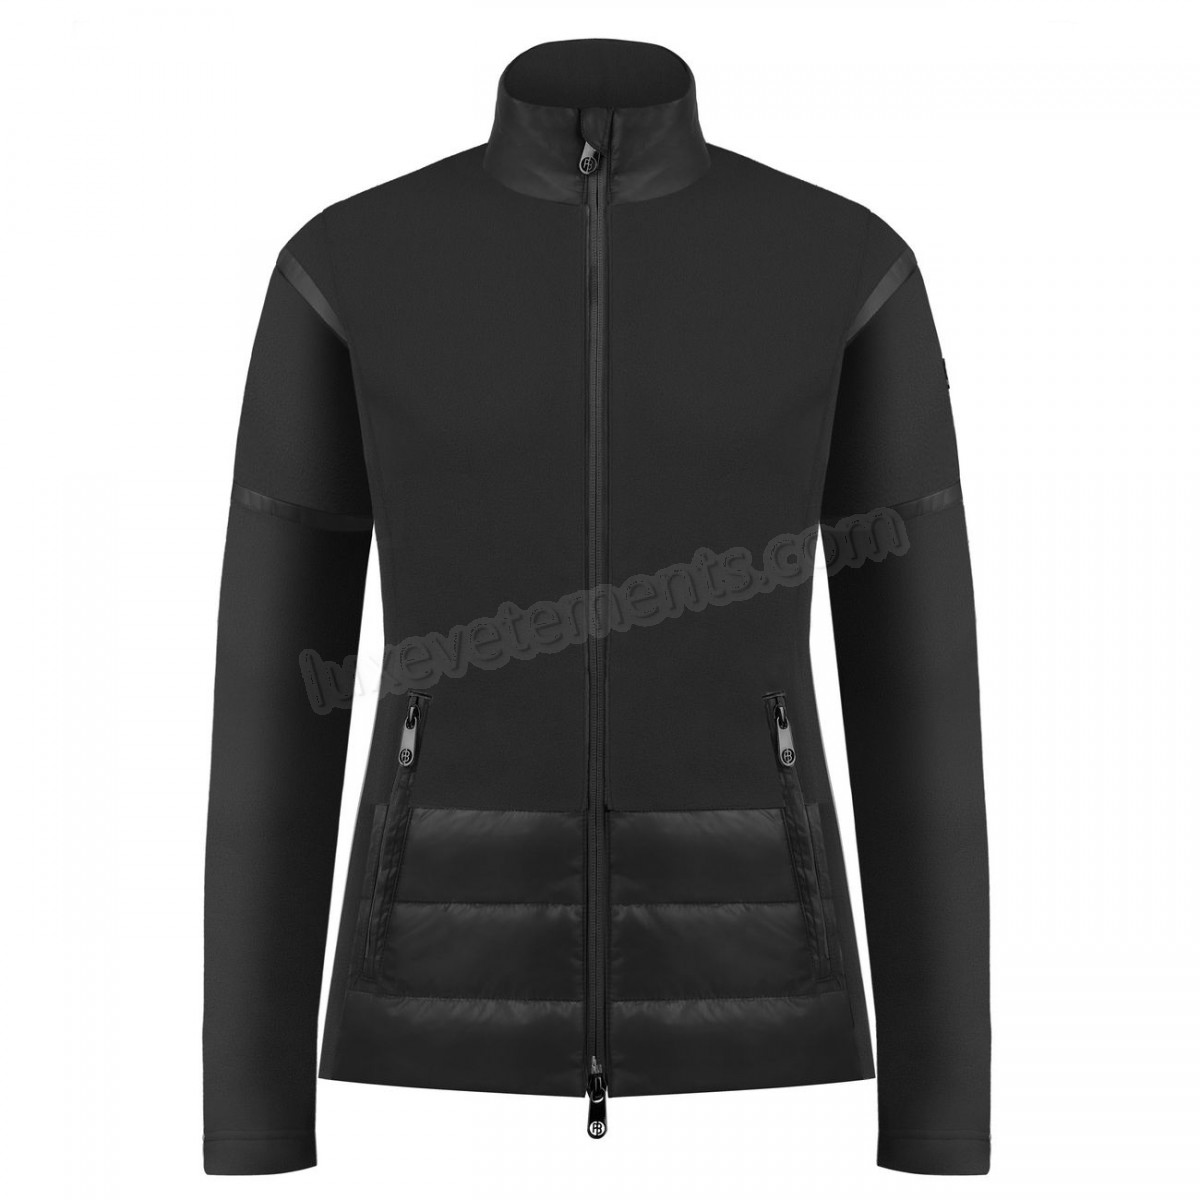 Poivre Blanc-Sports d'hiver femme POIVRE BLANC Veste Polaire Poivre Blanc Hybrid Fleece Jacket 1601 Black Femme Vente en ligne - -2